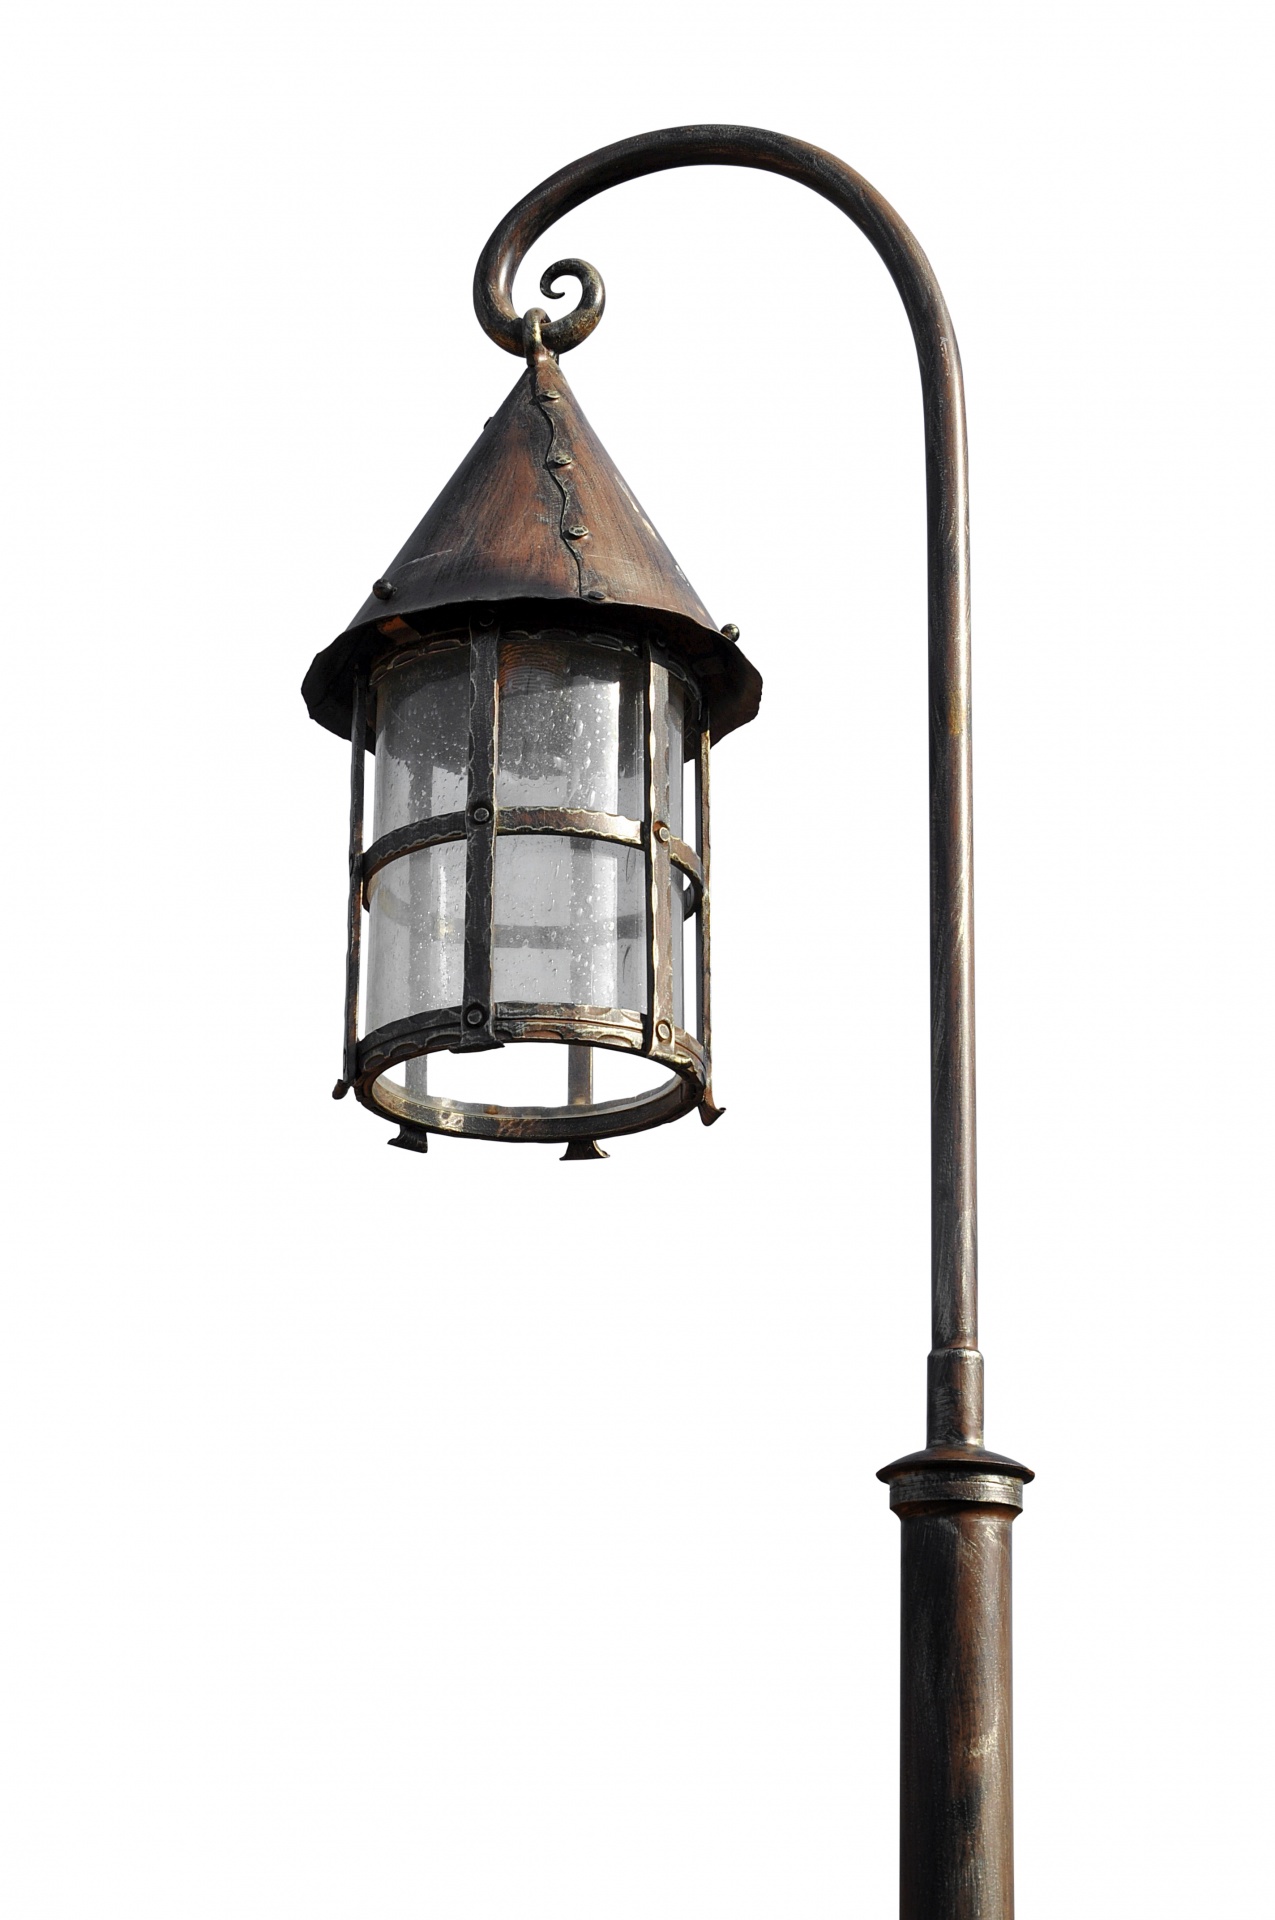 Lantern, Lamppost, Lighting